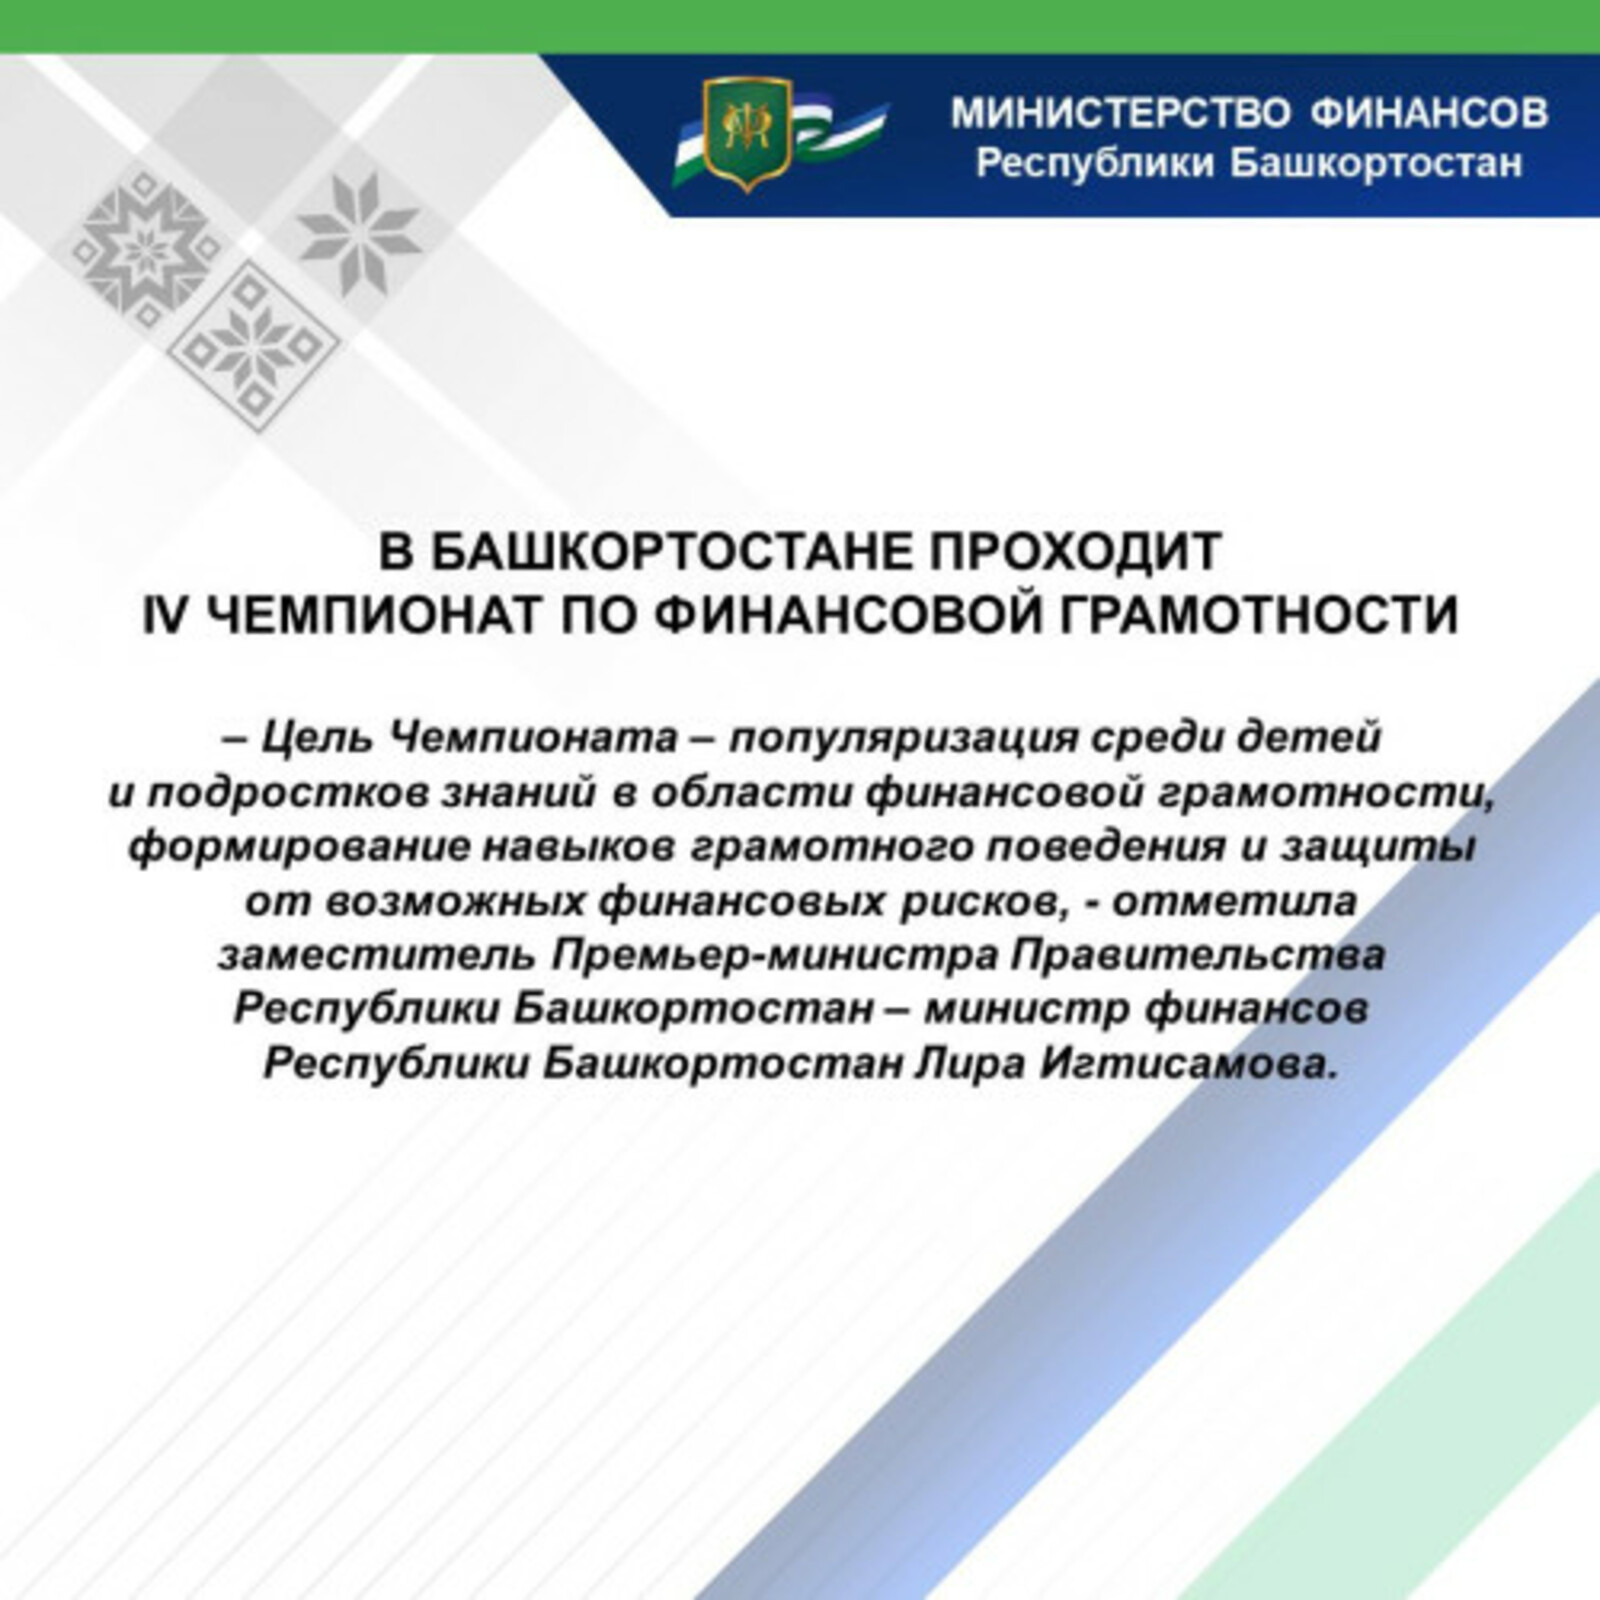 В Башкортостане проходит IV Чемпионат по финансовой грамотности